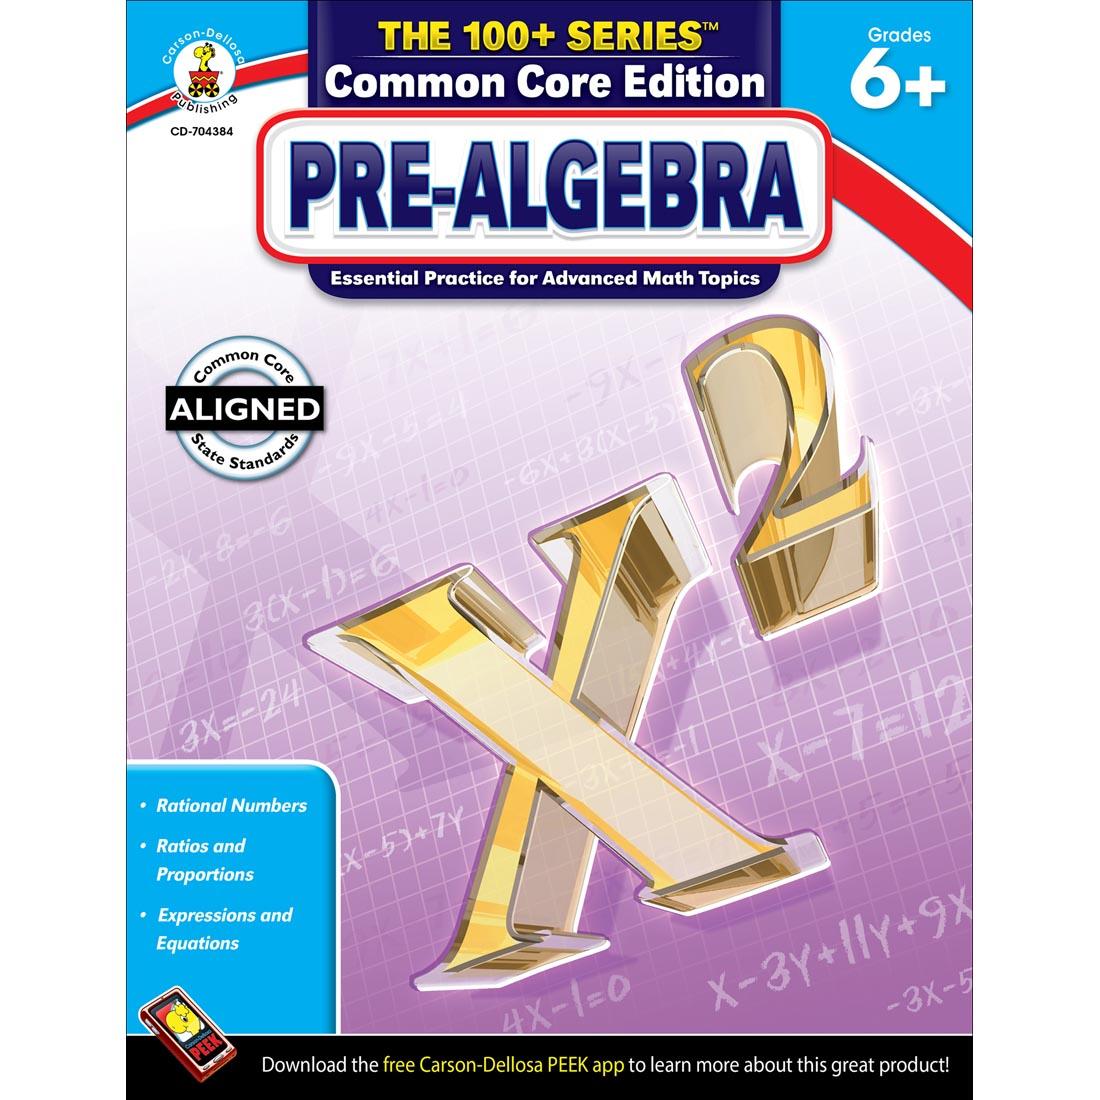 The 100+ Series Common Core Edition Pre-Algebra Book by Carson Dellosa